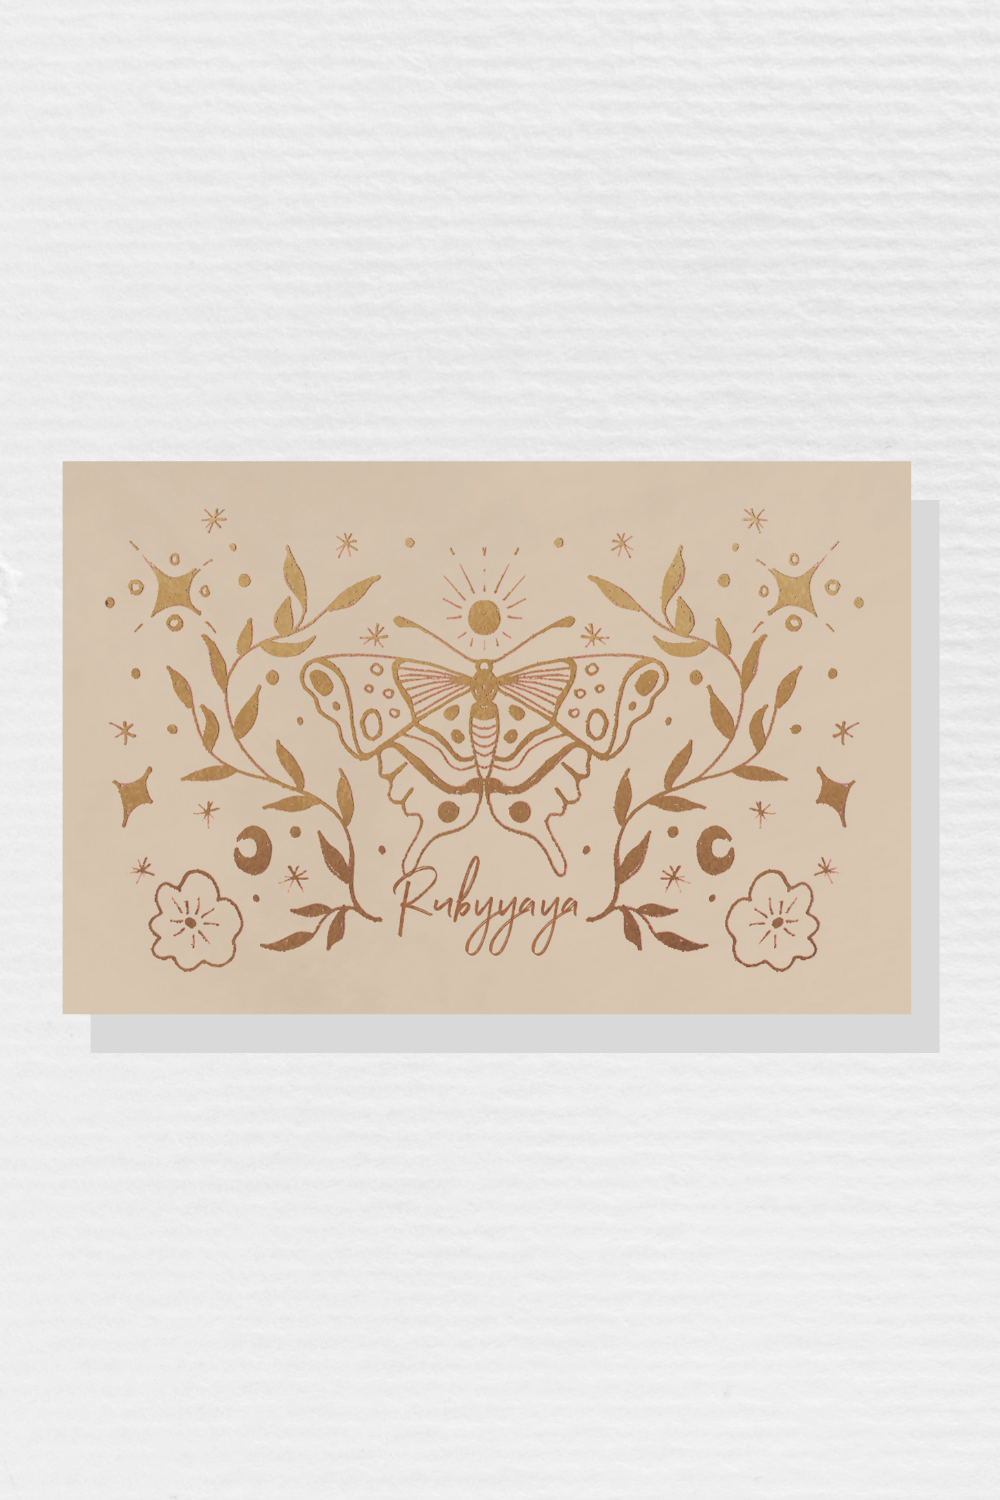 Rubyyaya eGift Card